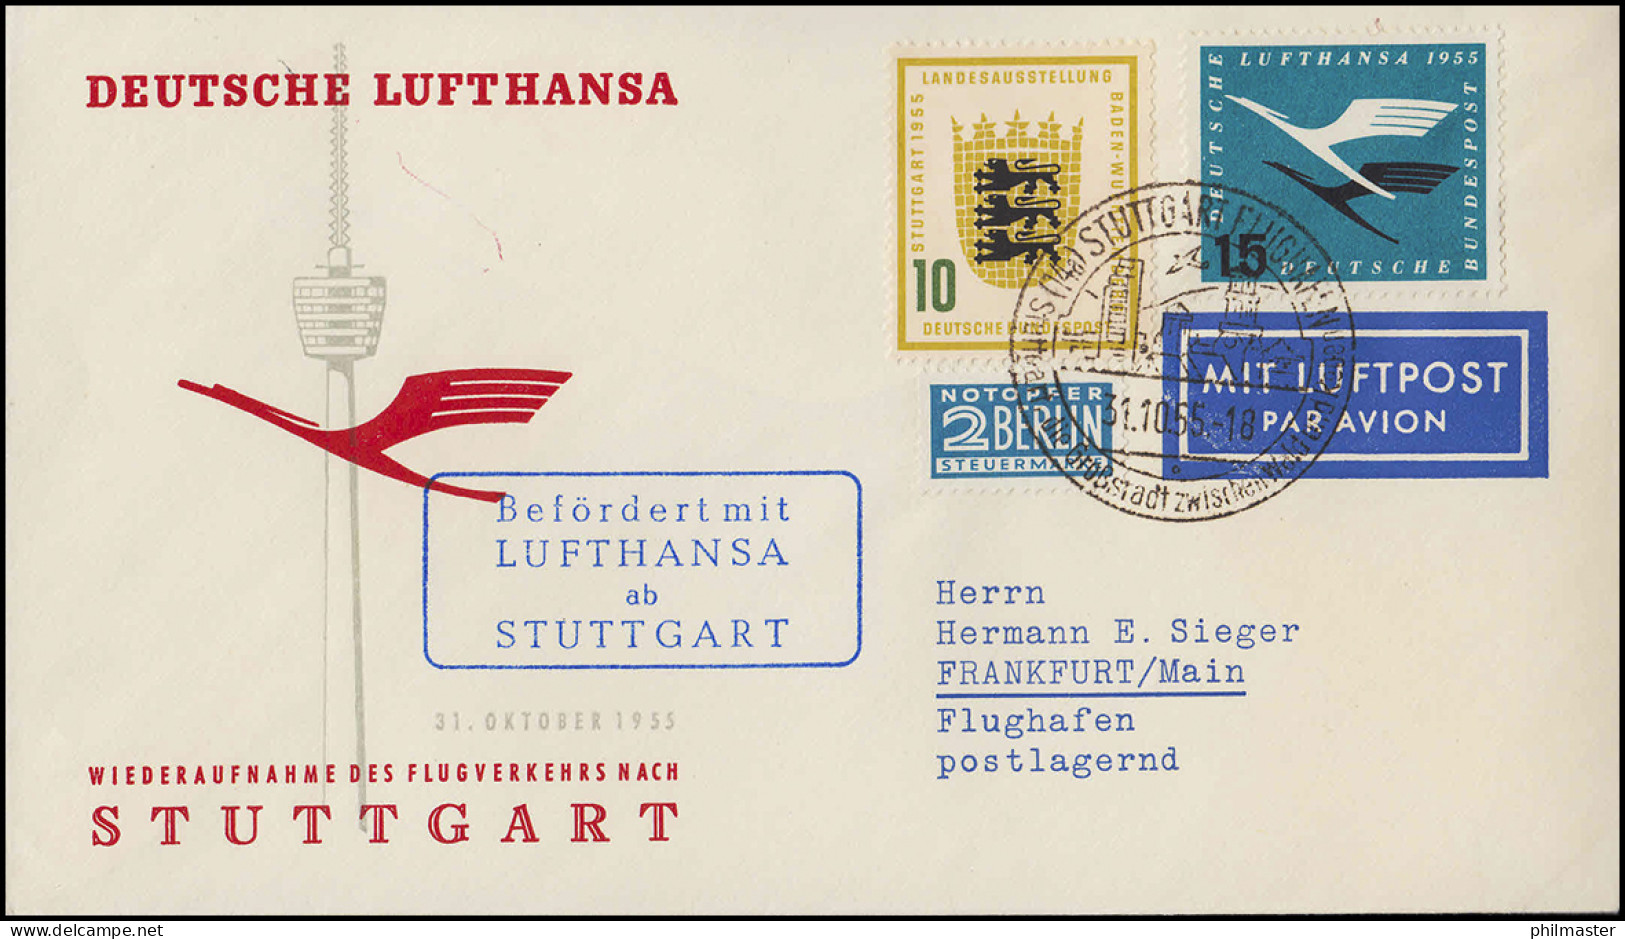 Luftpost Lufthansa Wiederaufnahme Inland Flugverkehr Nach Stuttgart, 31.10.1955 - Premiers Vols